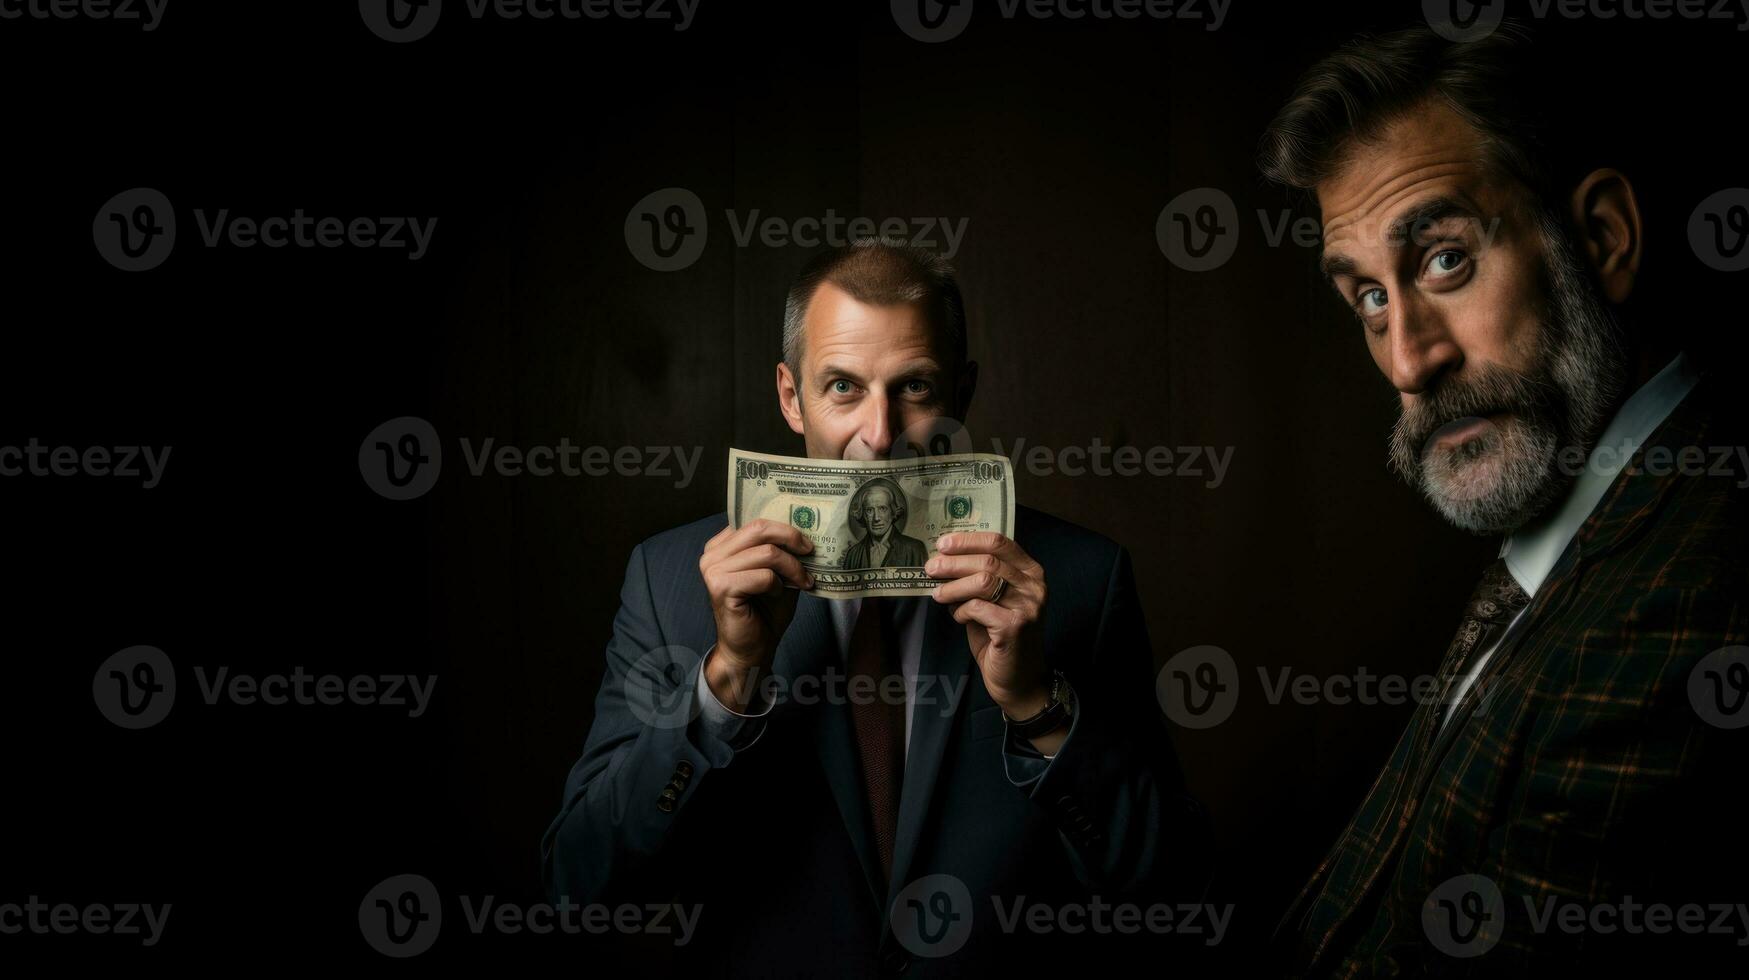 geld sluit mijn mond naar vertellen de waarheid. fraude in wettelijk advocaat Diensten. twee mannen in pakken Aan een donker achtergrond. foto